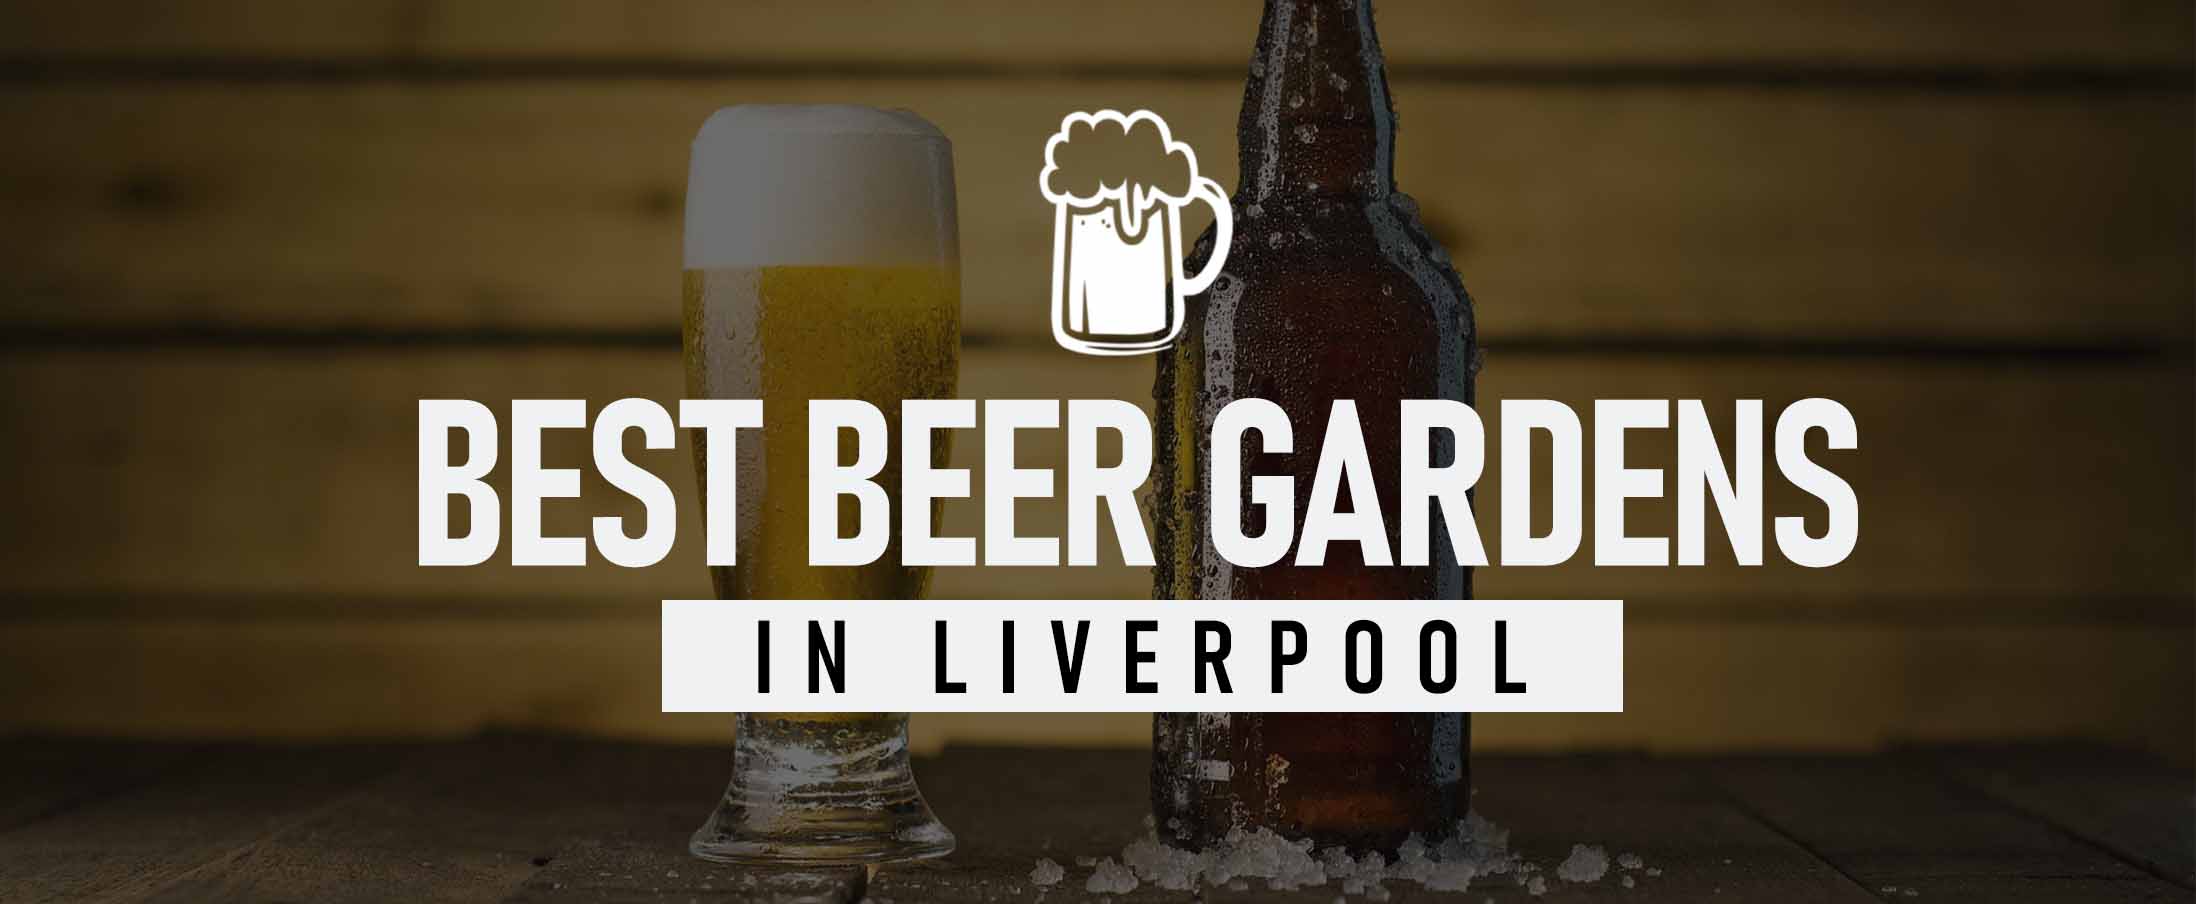 Best Beer Gardens in Liverpool